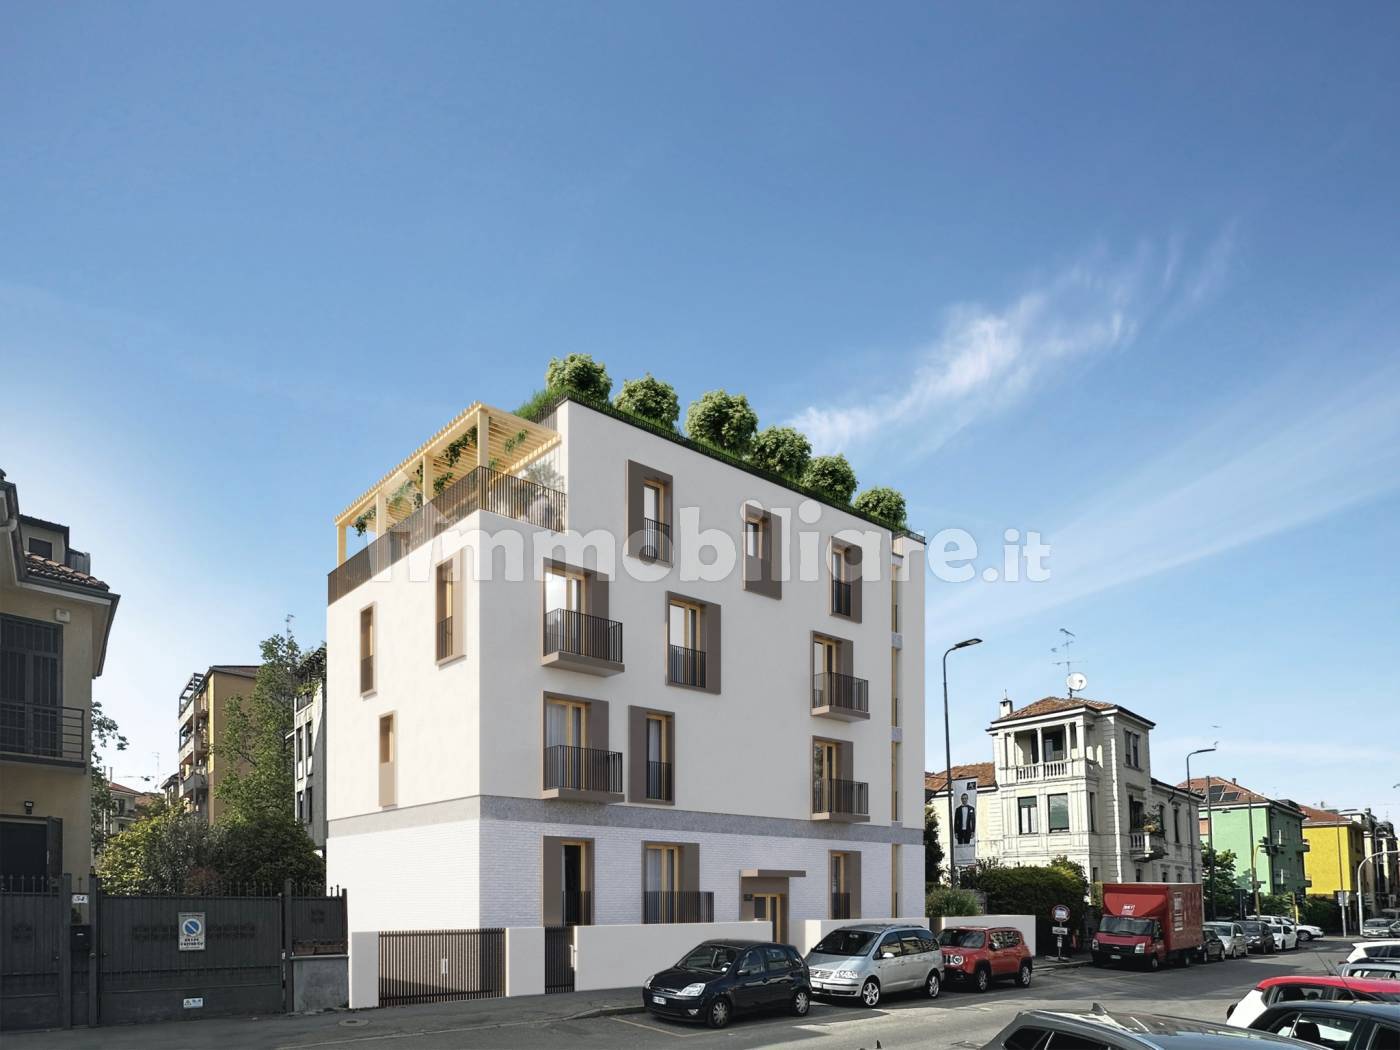 Nuove costruzioni in zona Monte Rosa - Lotto, Milano - Immobiliare.it